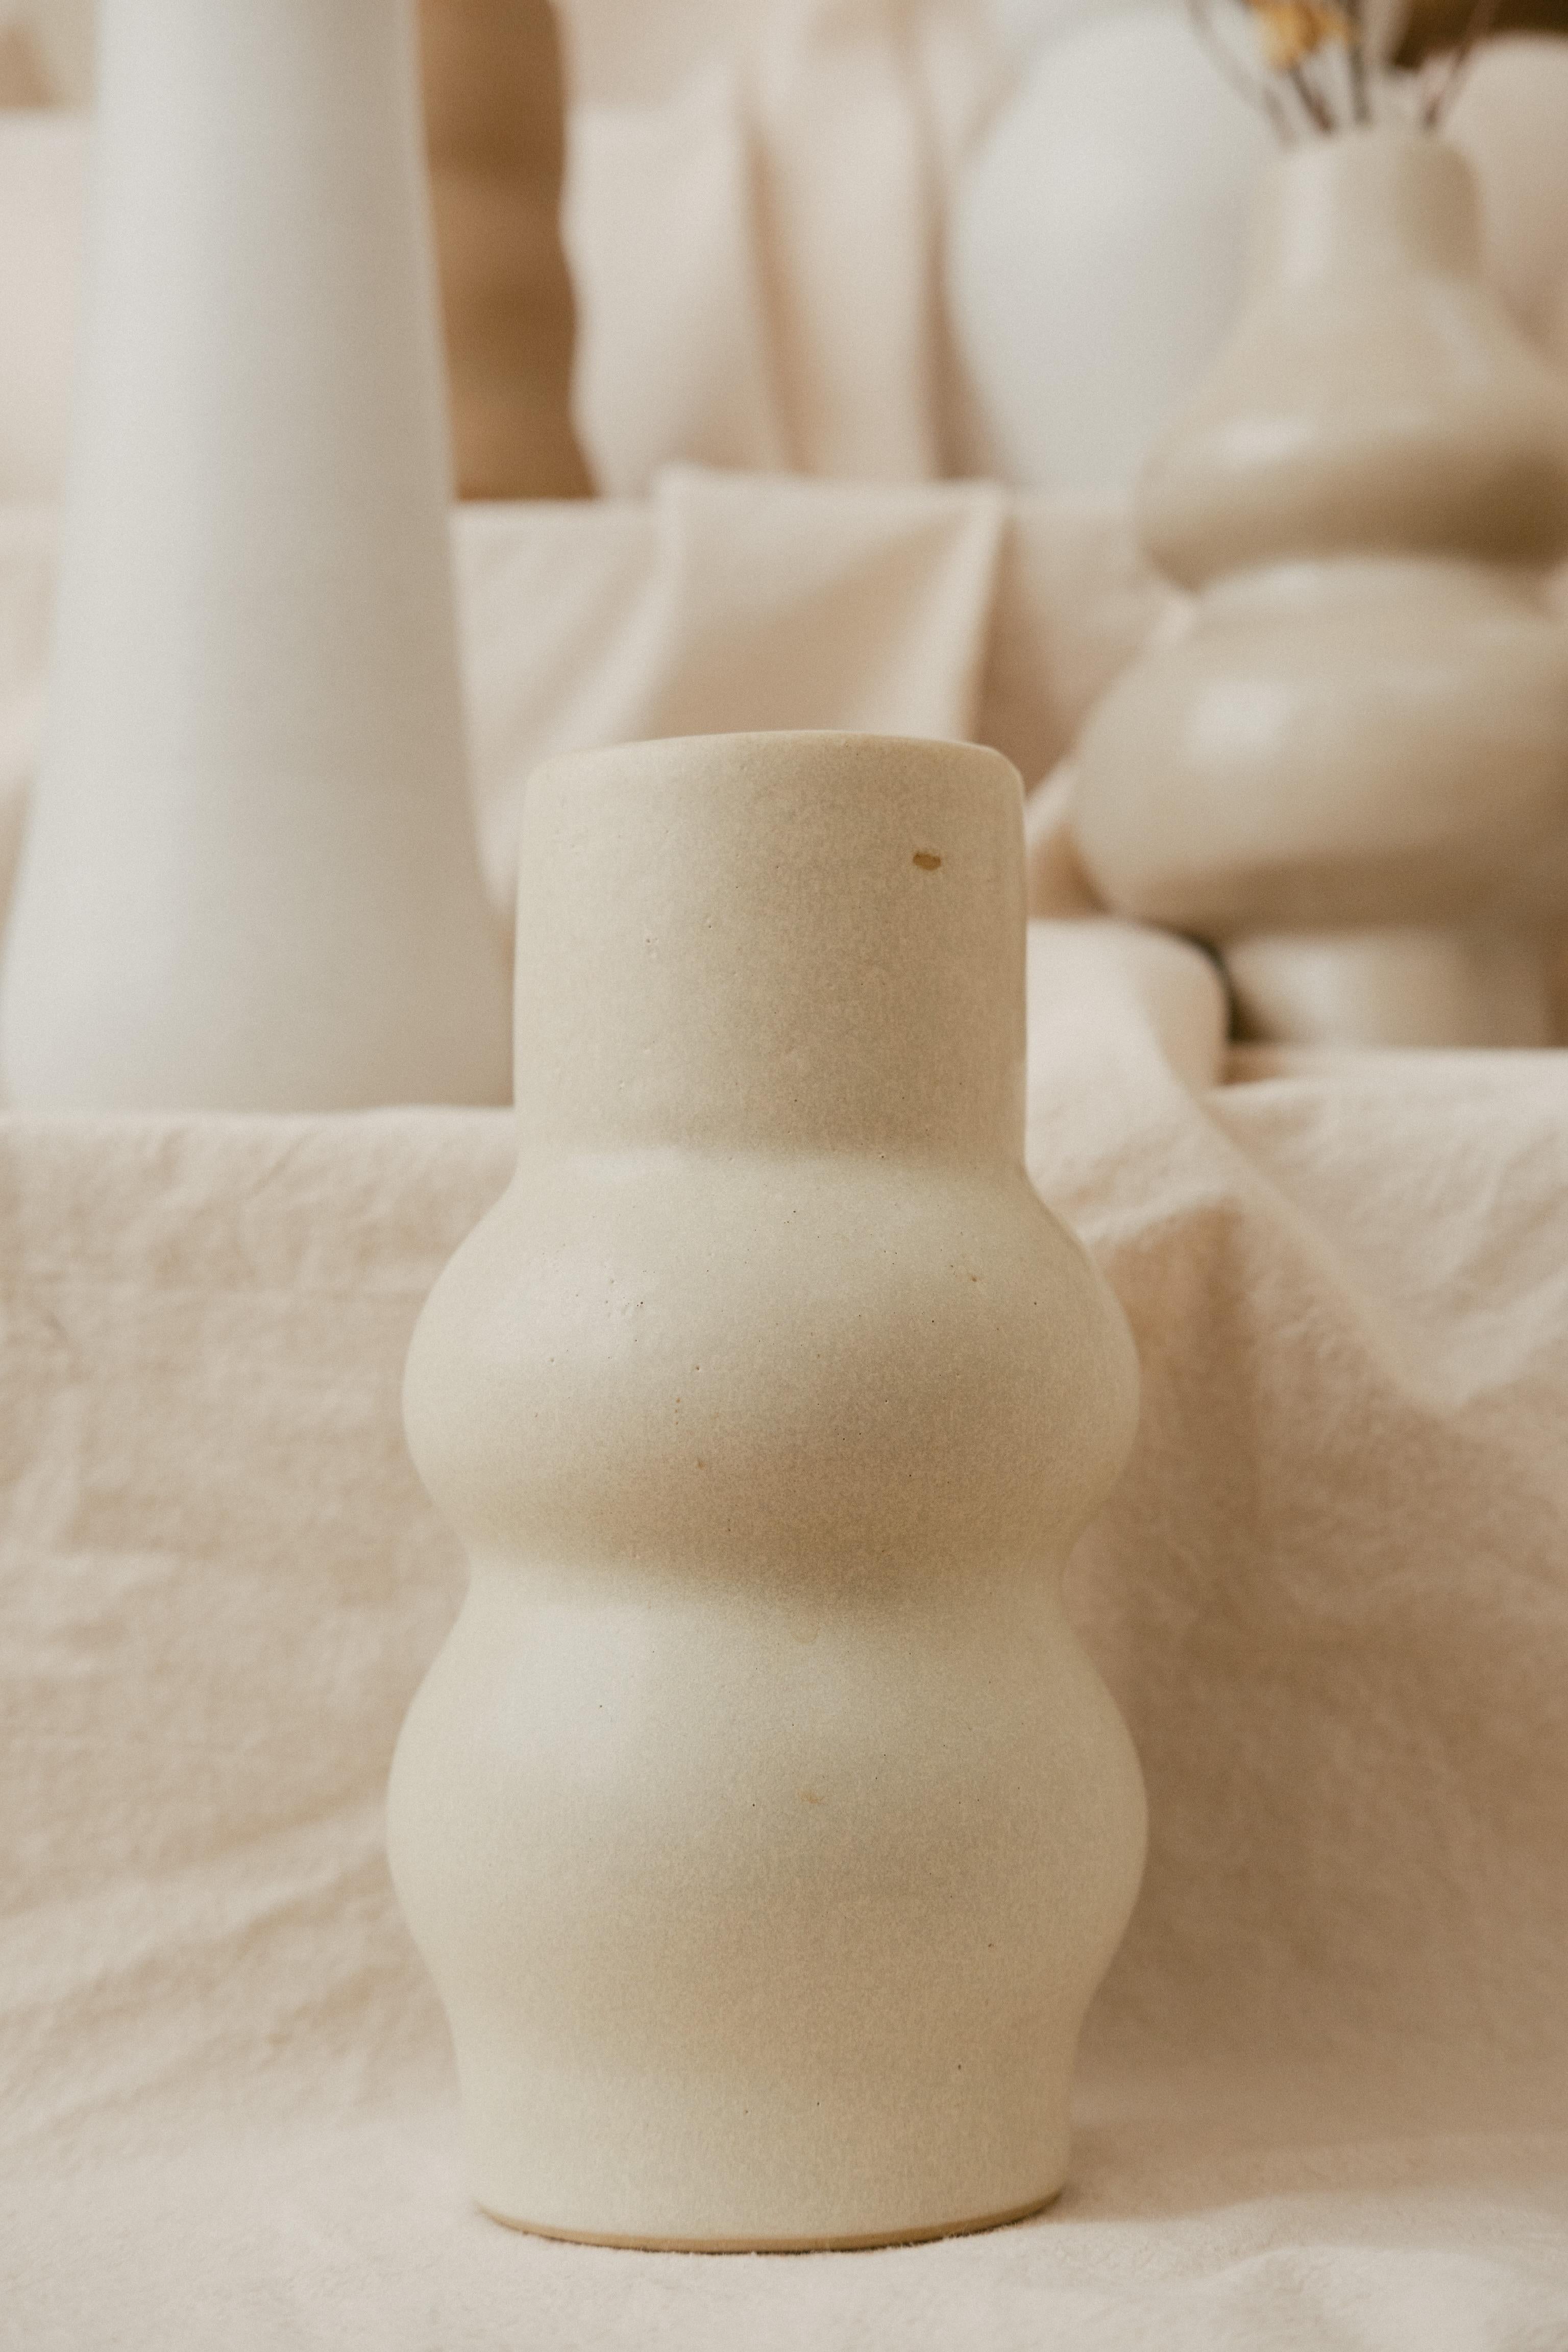 Vase White Bone Femme II de Camila Apaez
Matériaux : Céramique
Dimensions : D 10 x H 22 cm
Options : Os blanc, Chocolat, Noir charbon, Nature, Barro tostado.

Les photos supplémentaires ne sont que des références pour d'autres possibilités de